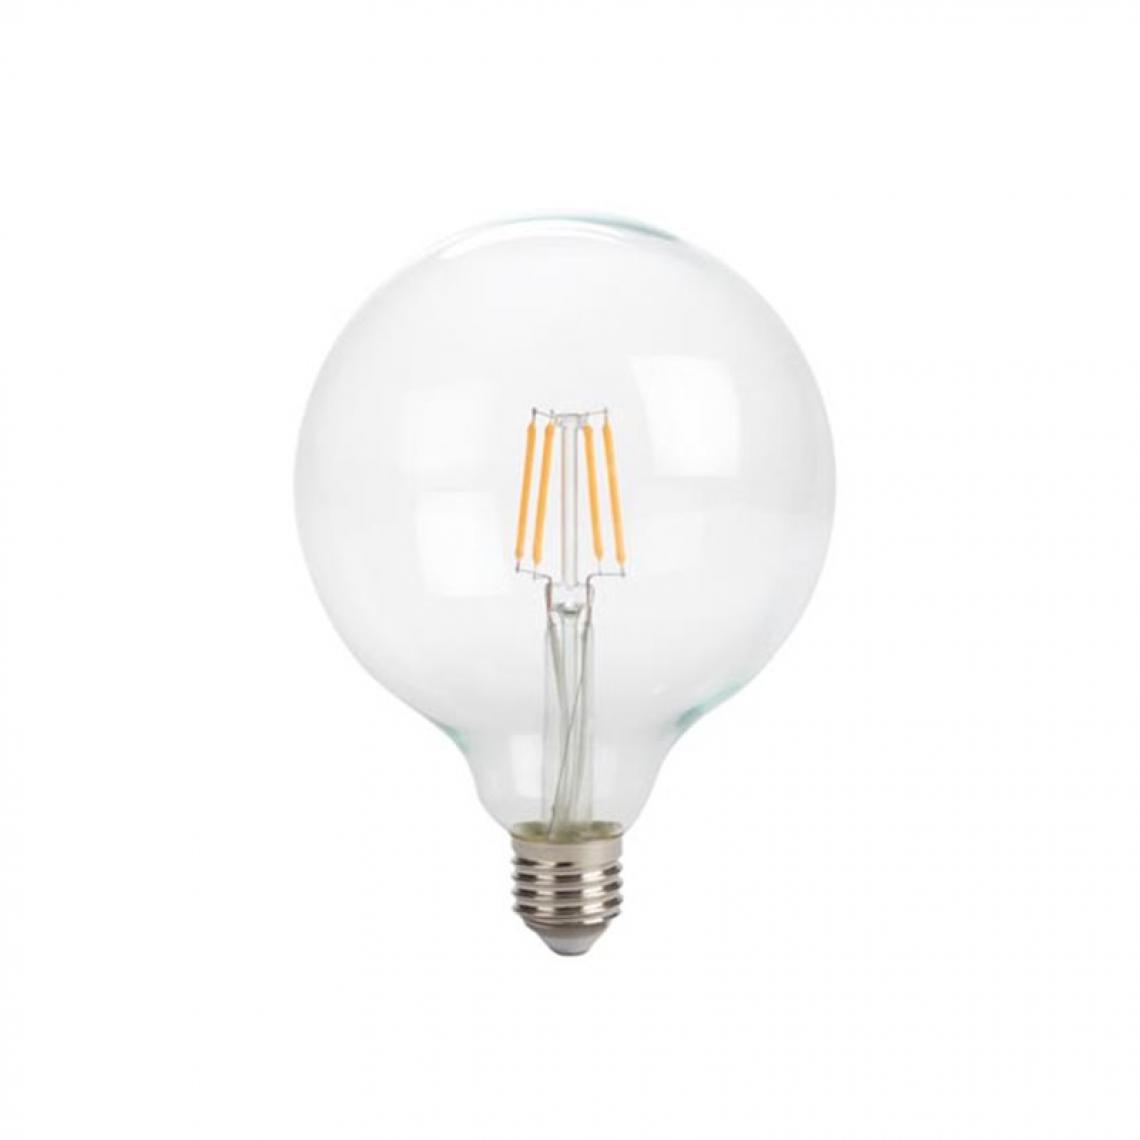 Perel - Ampoule À Filament Led - Style Rétro - G125 - 4 W - E27 - Blanc Chaud Intense - Ampoules LED